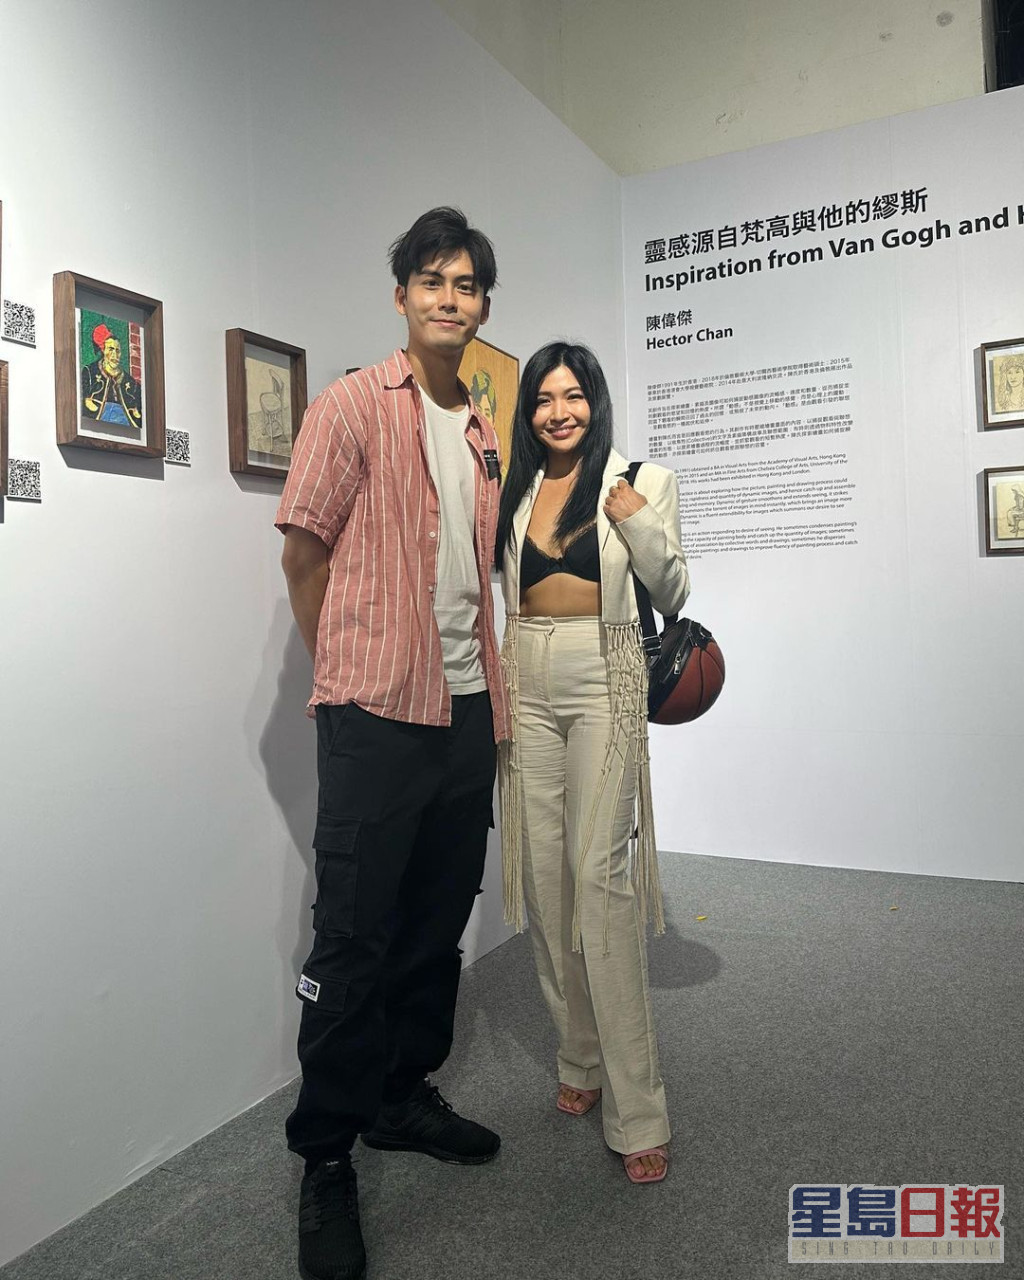 陈思圻前日贴出到澳门睇艺术展的照片。